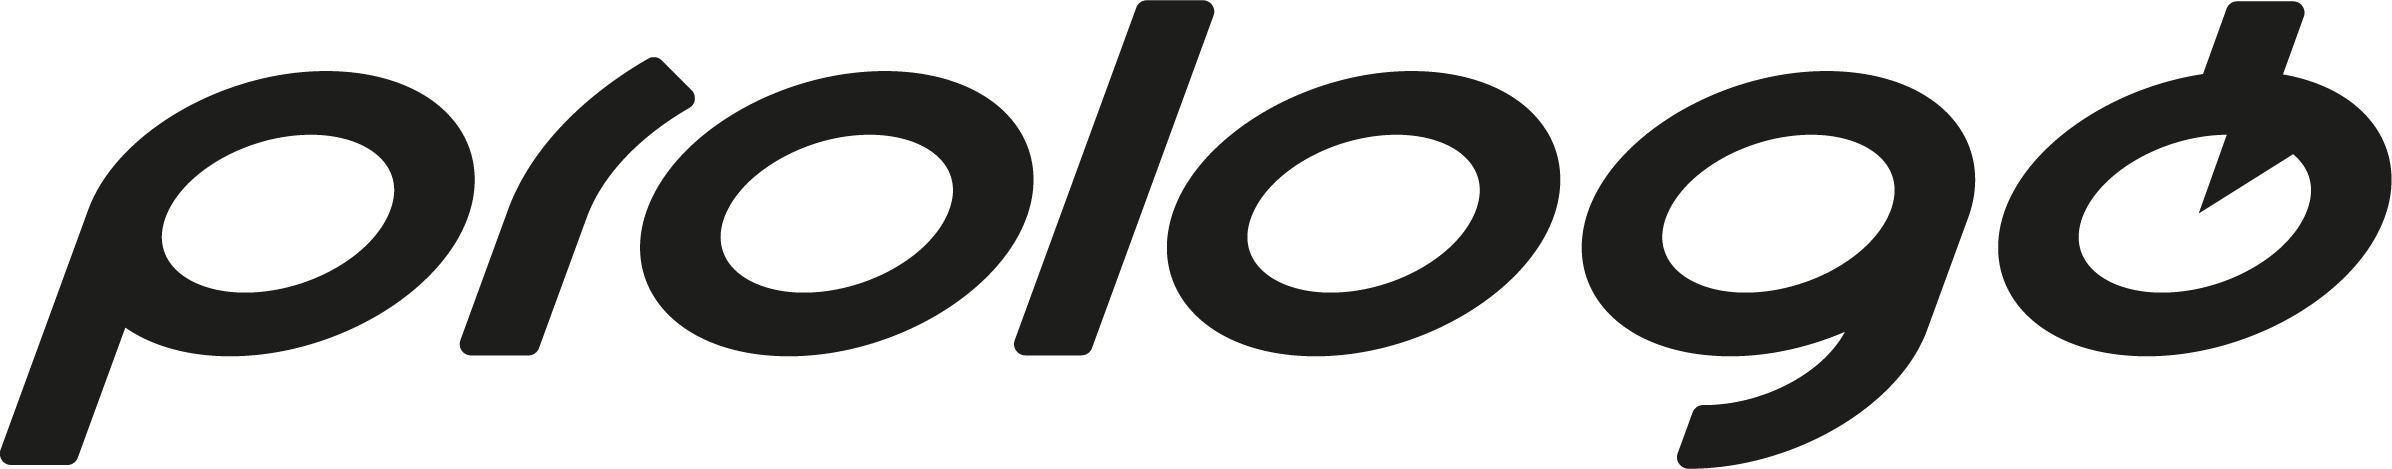 Prologo logo_600x600